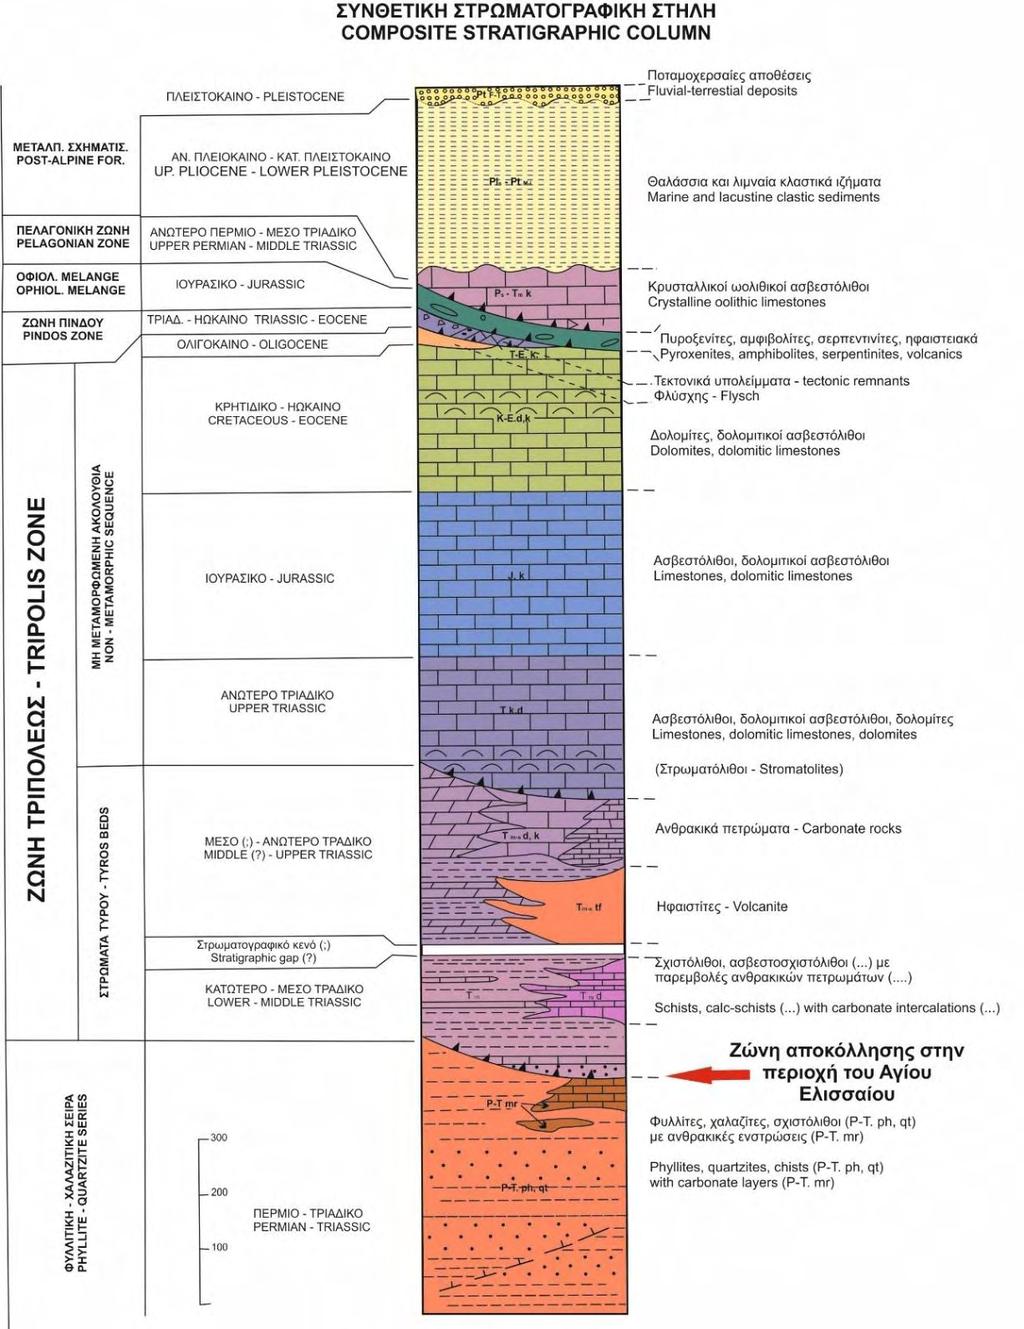 Παρακάτω παρατίθεται η συνθετική στρωματογραφική στήλη της περιοχής Παπαδιάνικα-Ποταμός, στην οποία ανήκει η περιοχή μελέτης (Εικόνα 4) και γεωλογική τομή κατά το μήκος του γεωλογικού χάρτη (Εικόνα